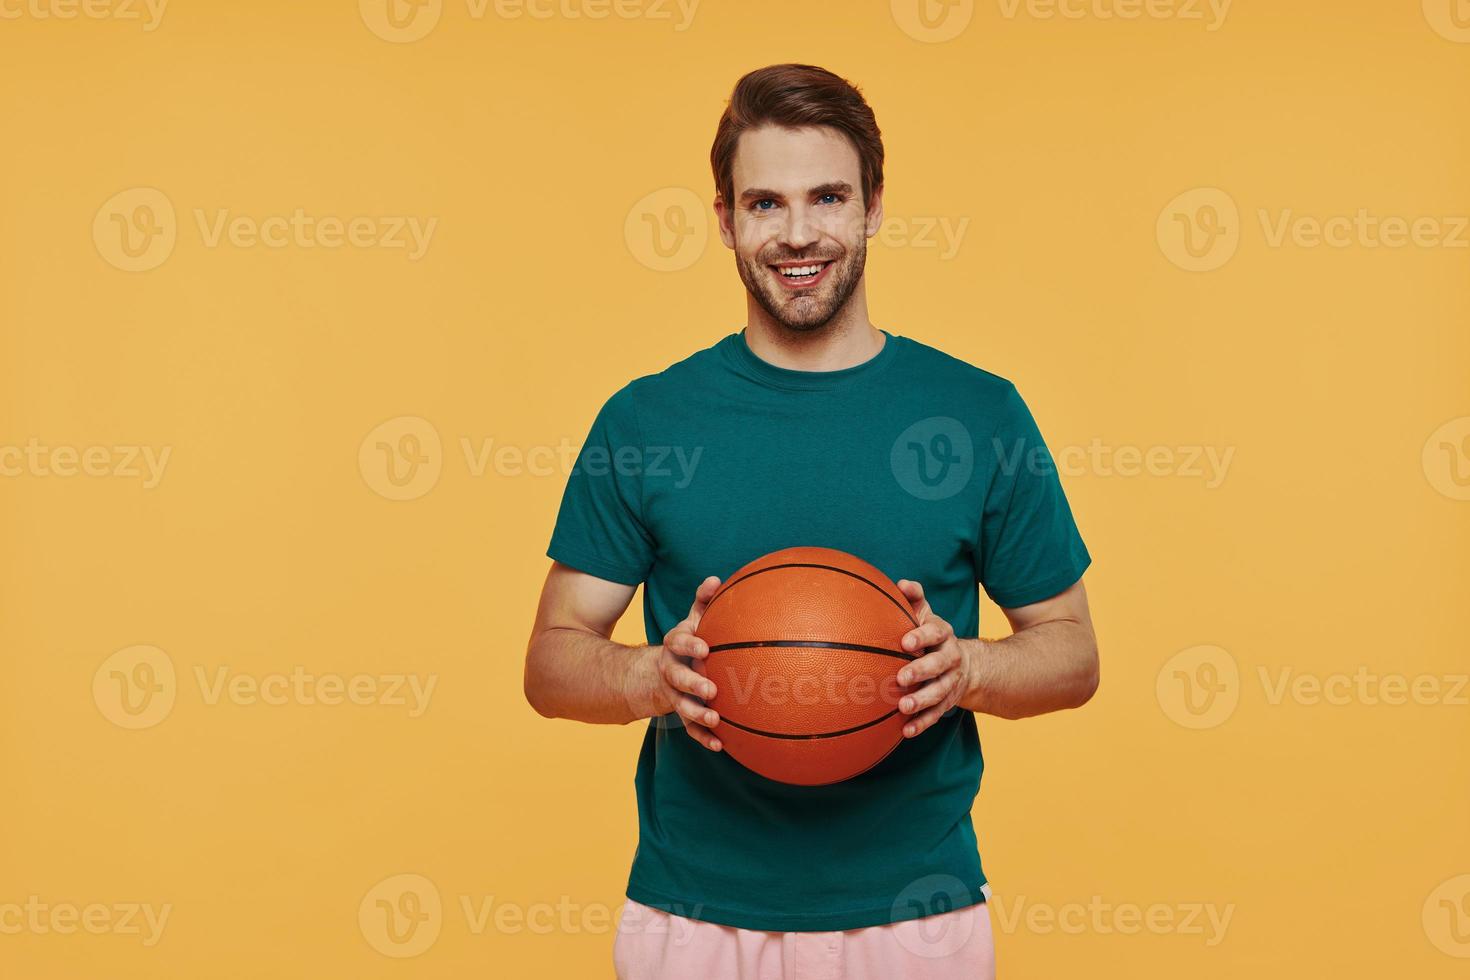 jovem bonito segurando uma bola de basquete e sorrindo em pé contra um fundo amarelo foto